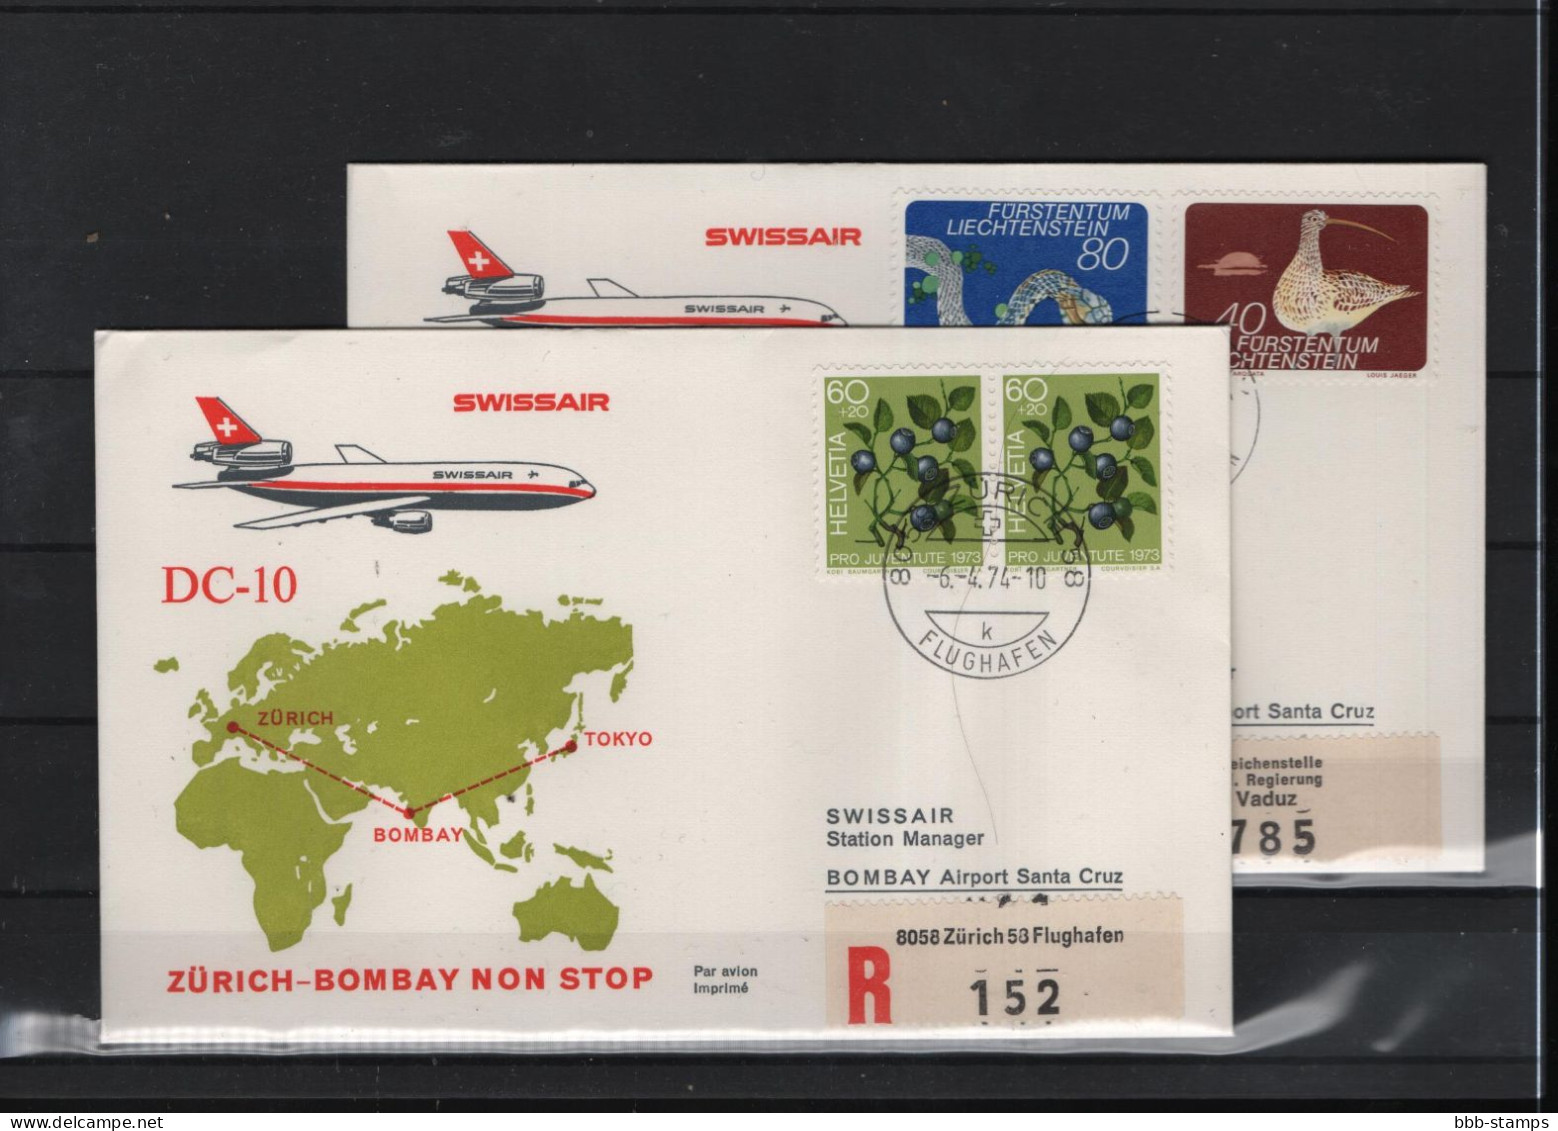 Schweiz Luftpost FFC Swissair  6.4.1974 Zürich - Bombay - Tokio Vv - Eerste Vluchten